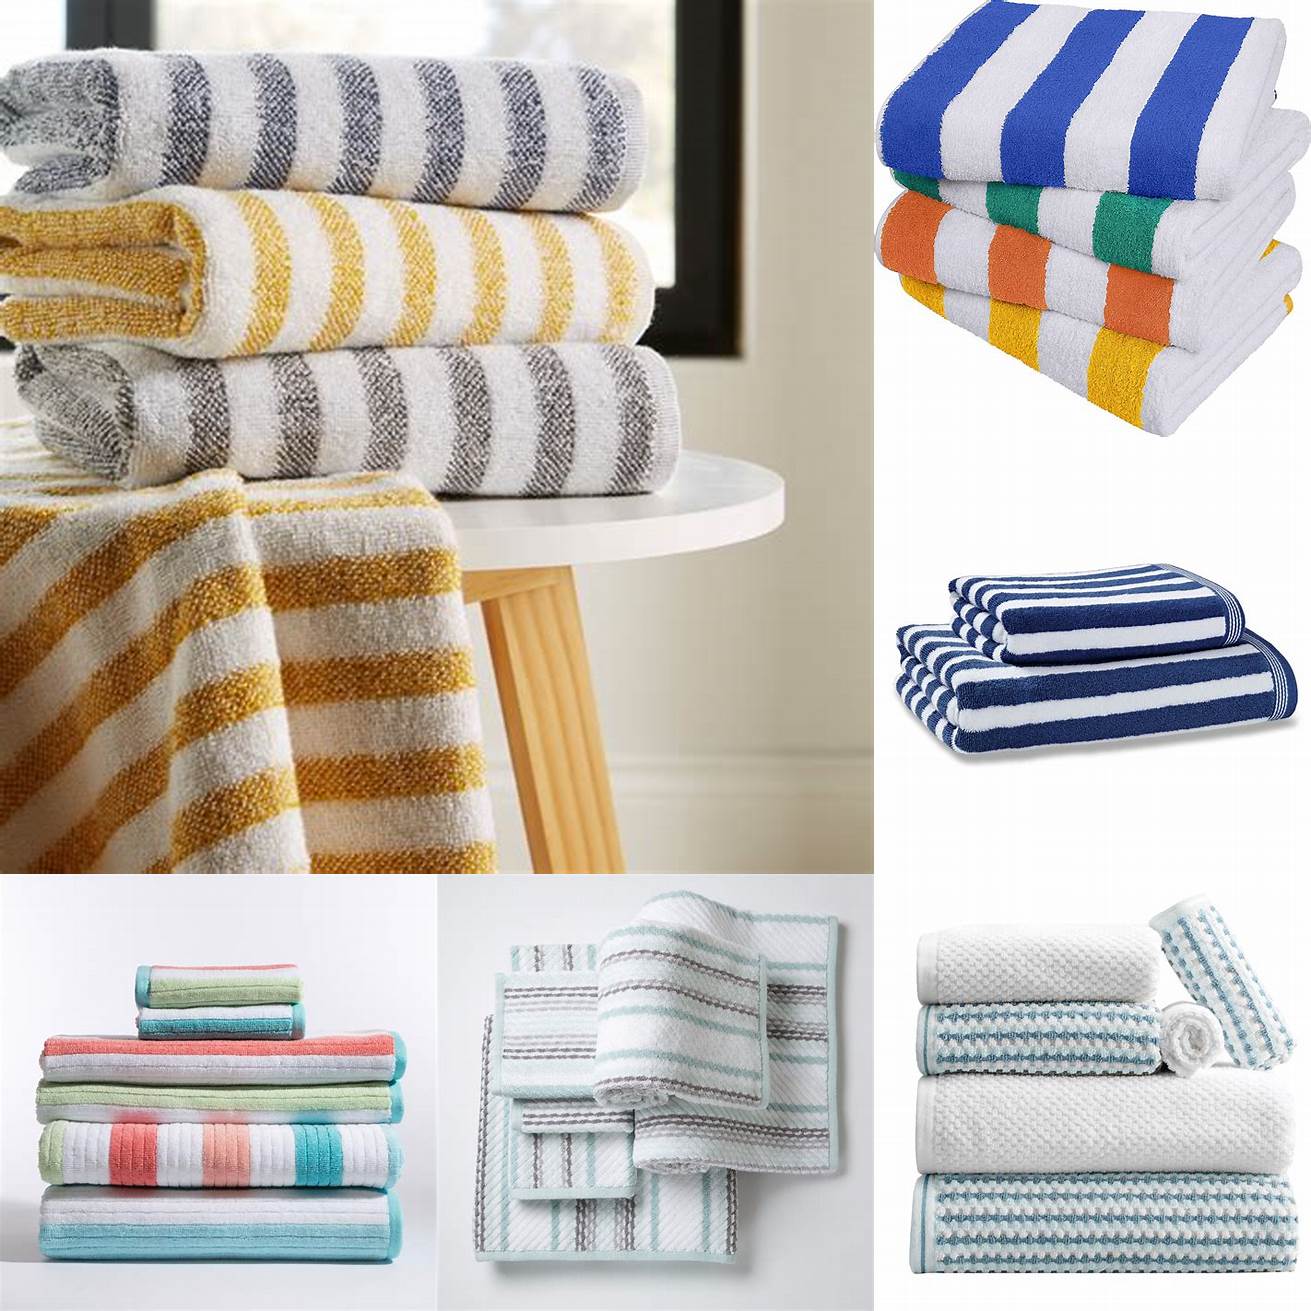 Striped towels